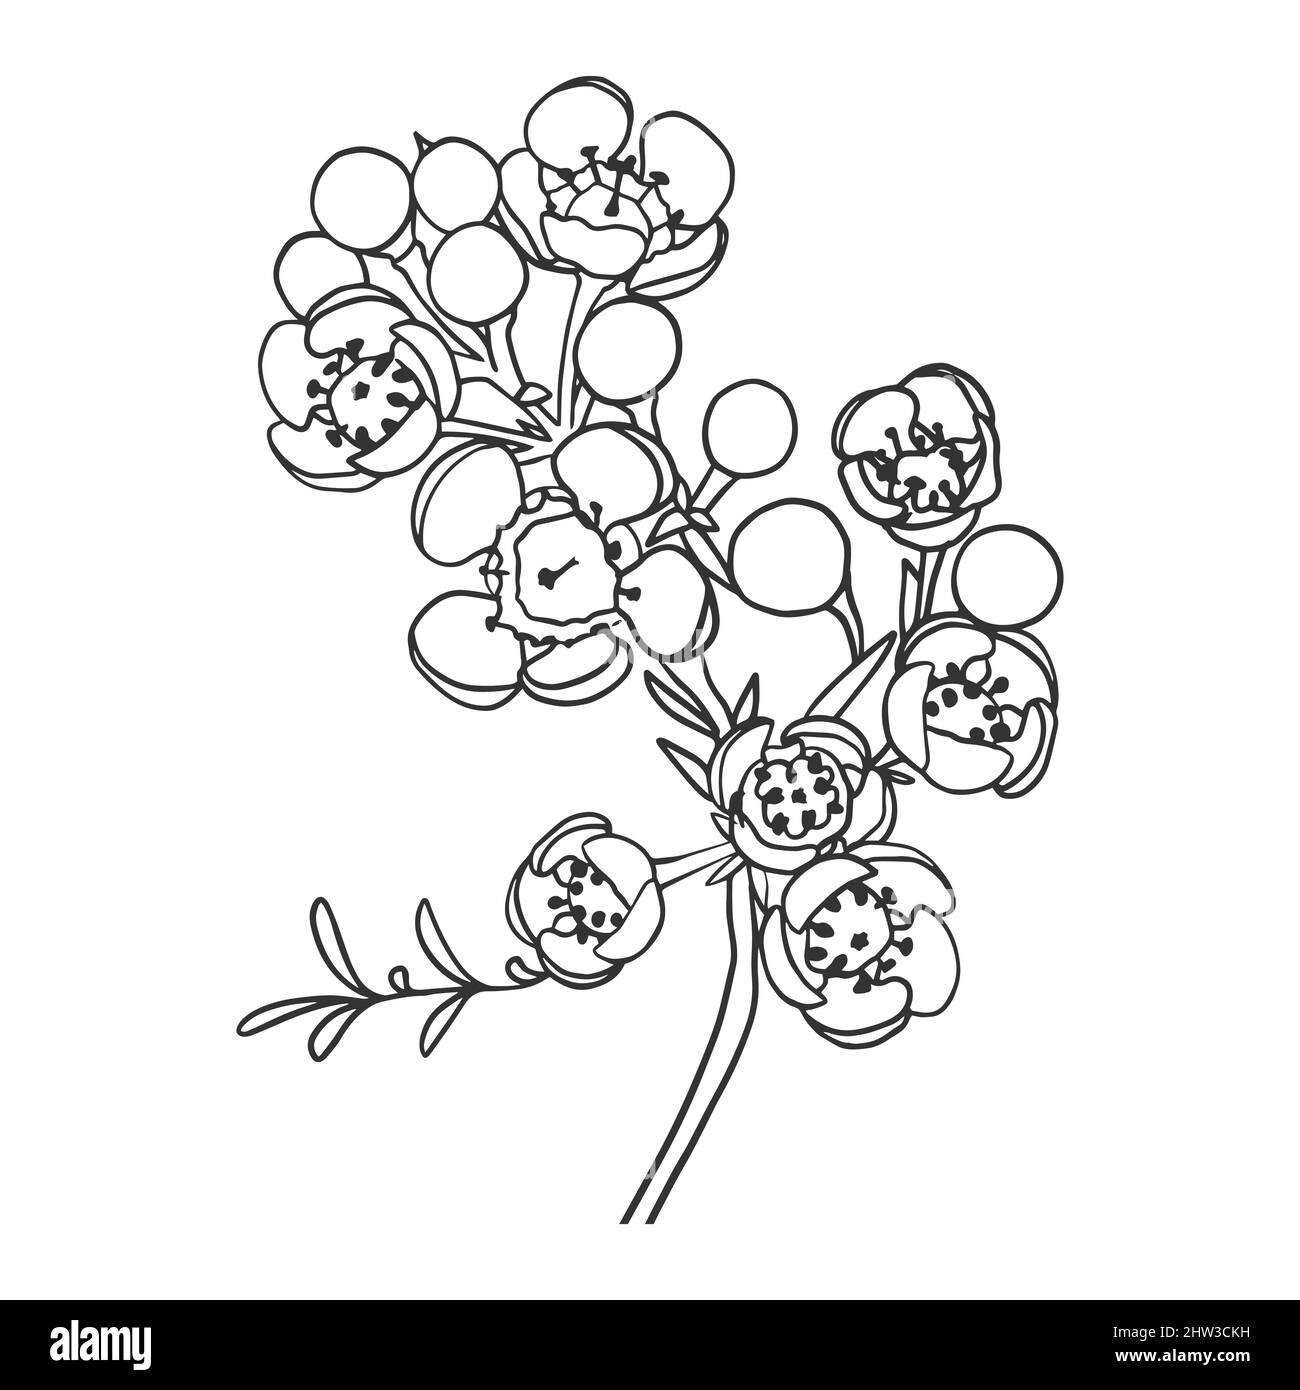 Dessin de contour d'une branche d'une plante australienne avec des fleurs. Chamelaucium. Style Doodle. Illustration de Vecteur